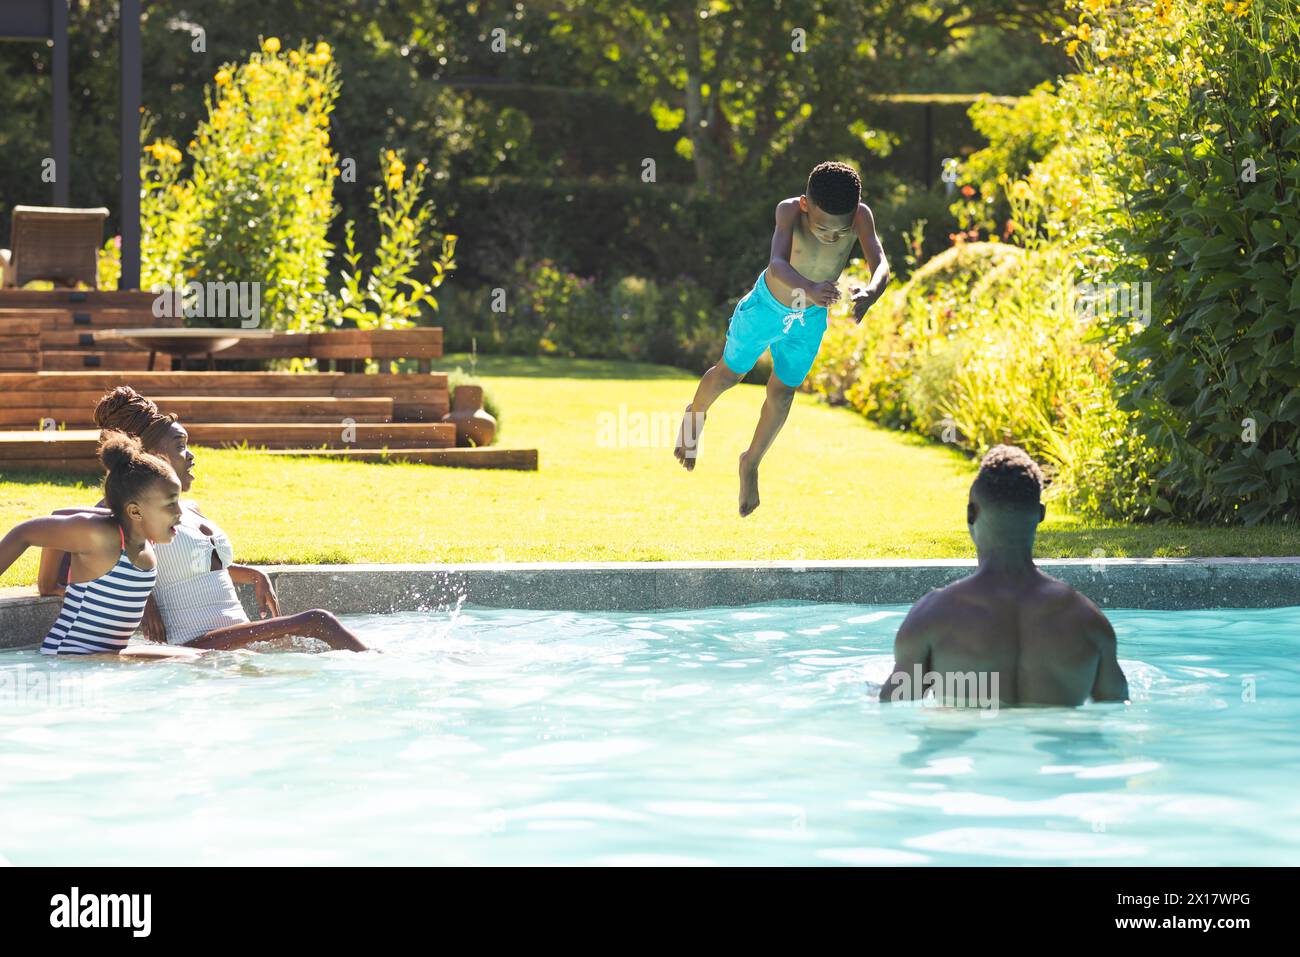 Famille afro-américaine profitant du temps de piscine à la maison, jeune garçon sautant dans l'eau Banque D'Images